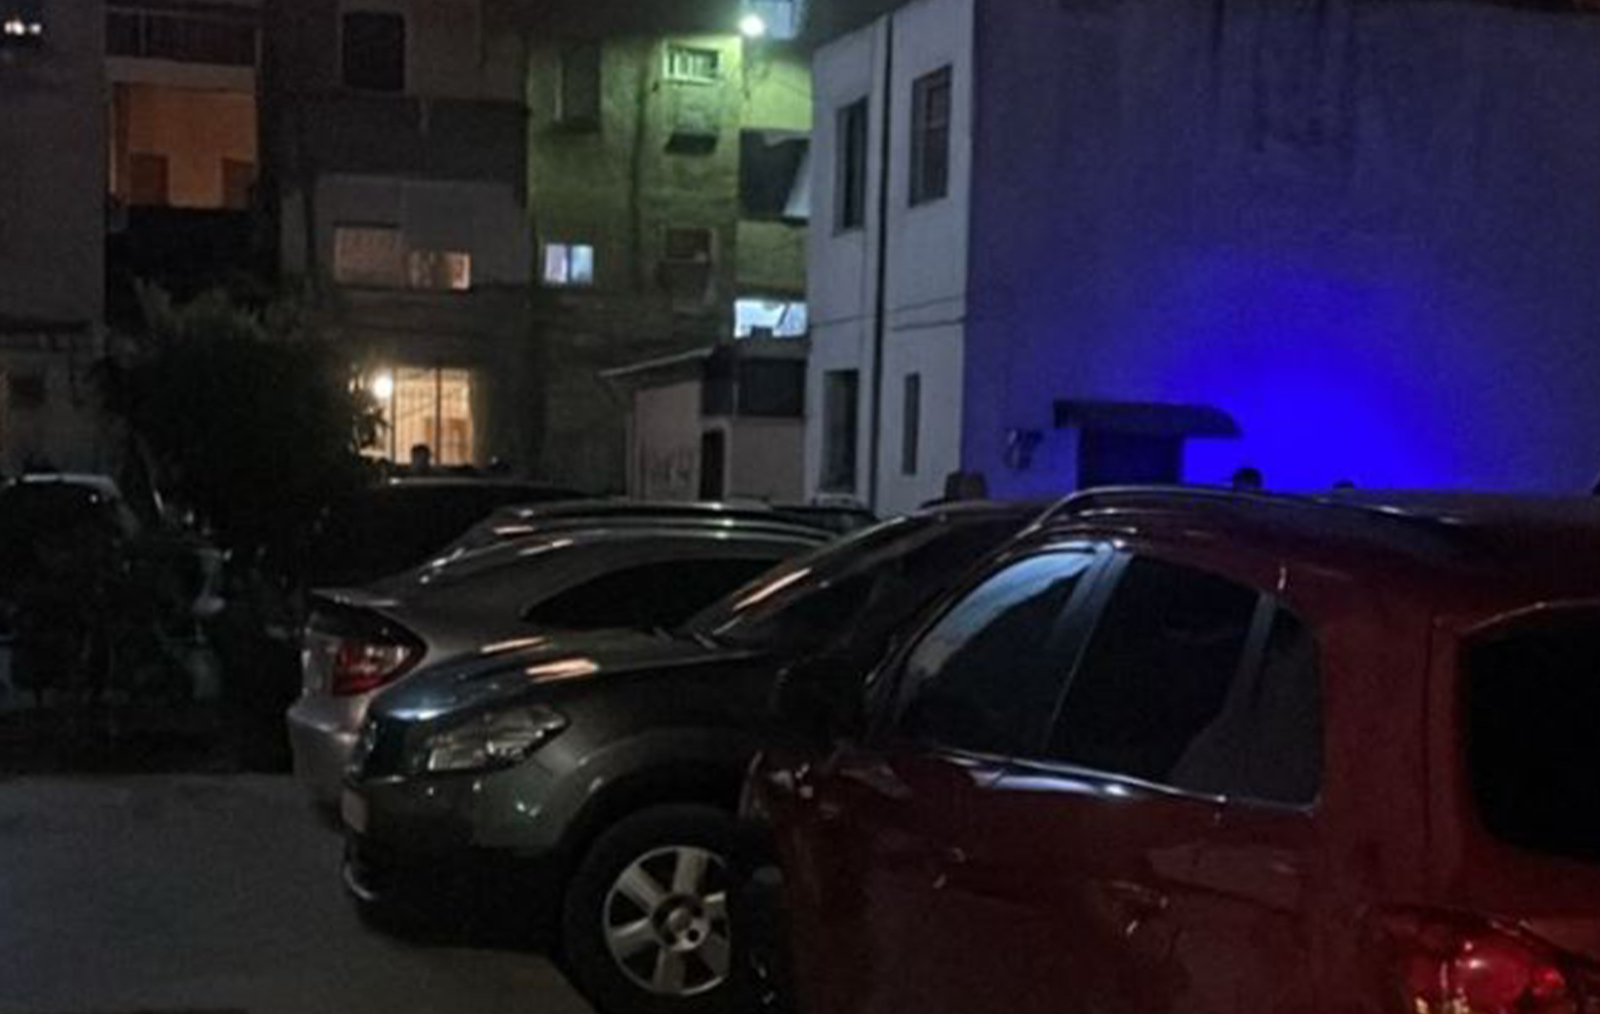 Shpërthen tritoli në shtëpinë e Ilir Koçiljas, vrau komshiun për një vend parkimi